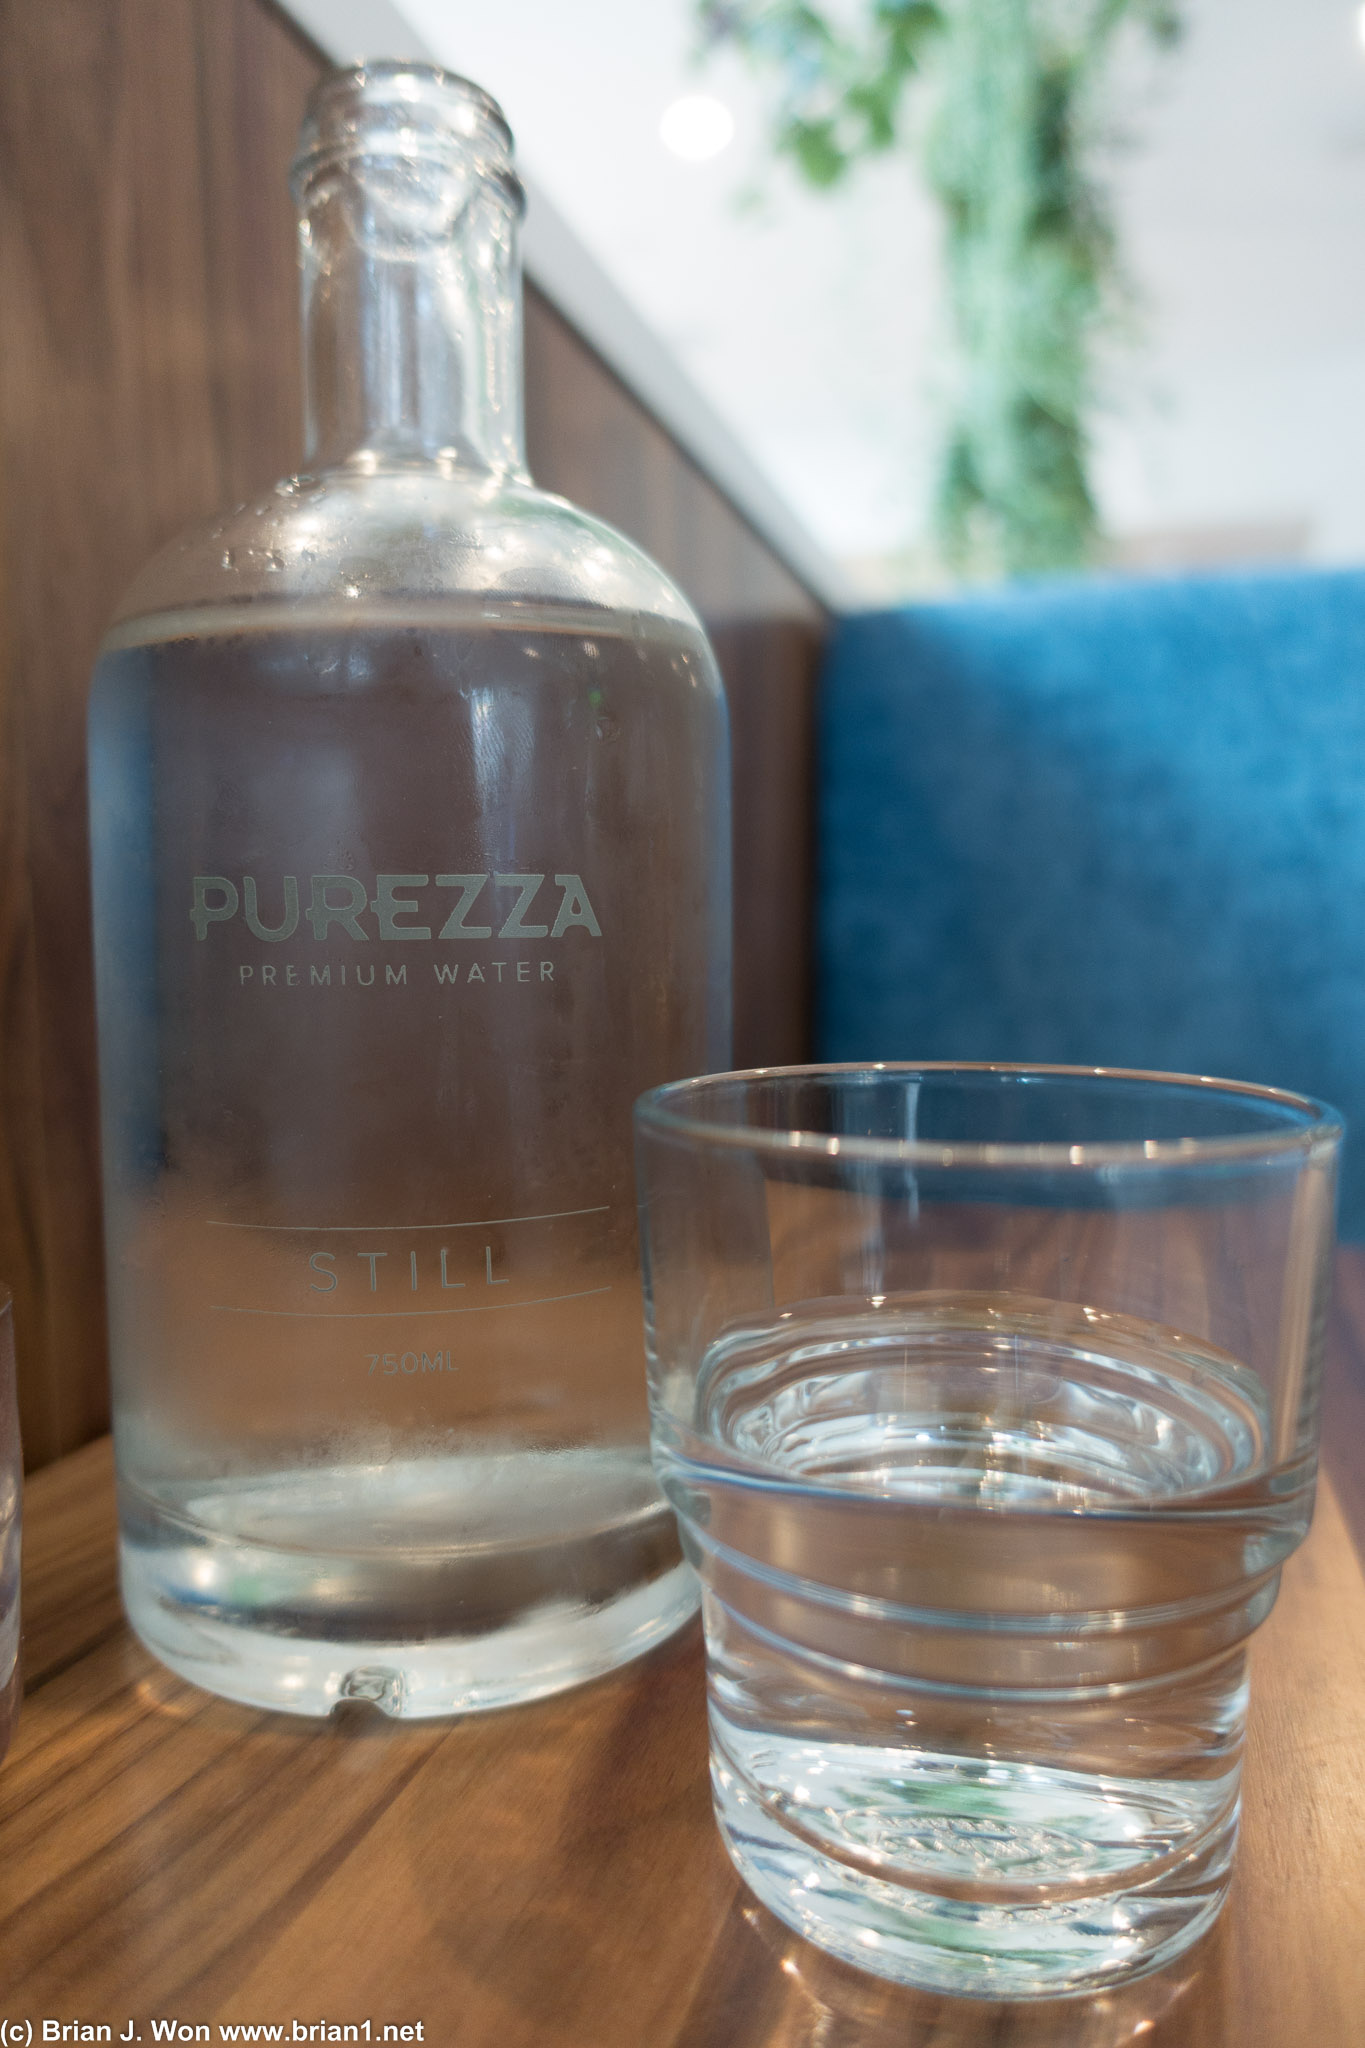 Purezza Premium water?